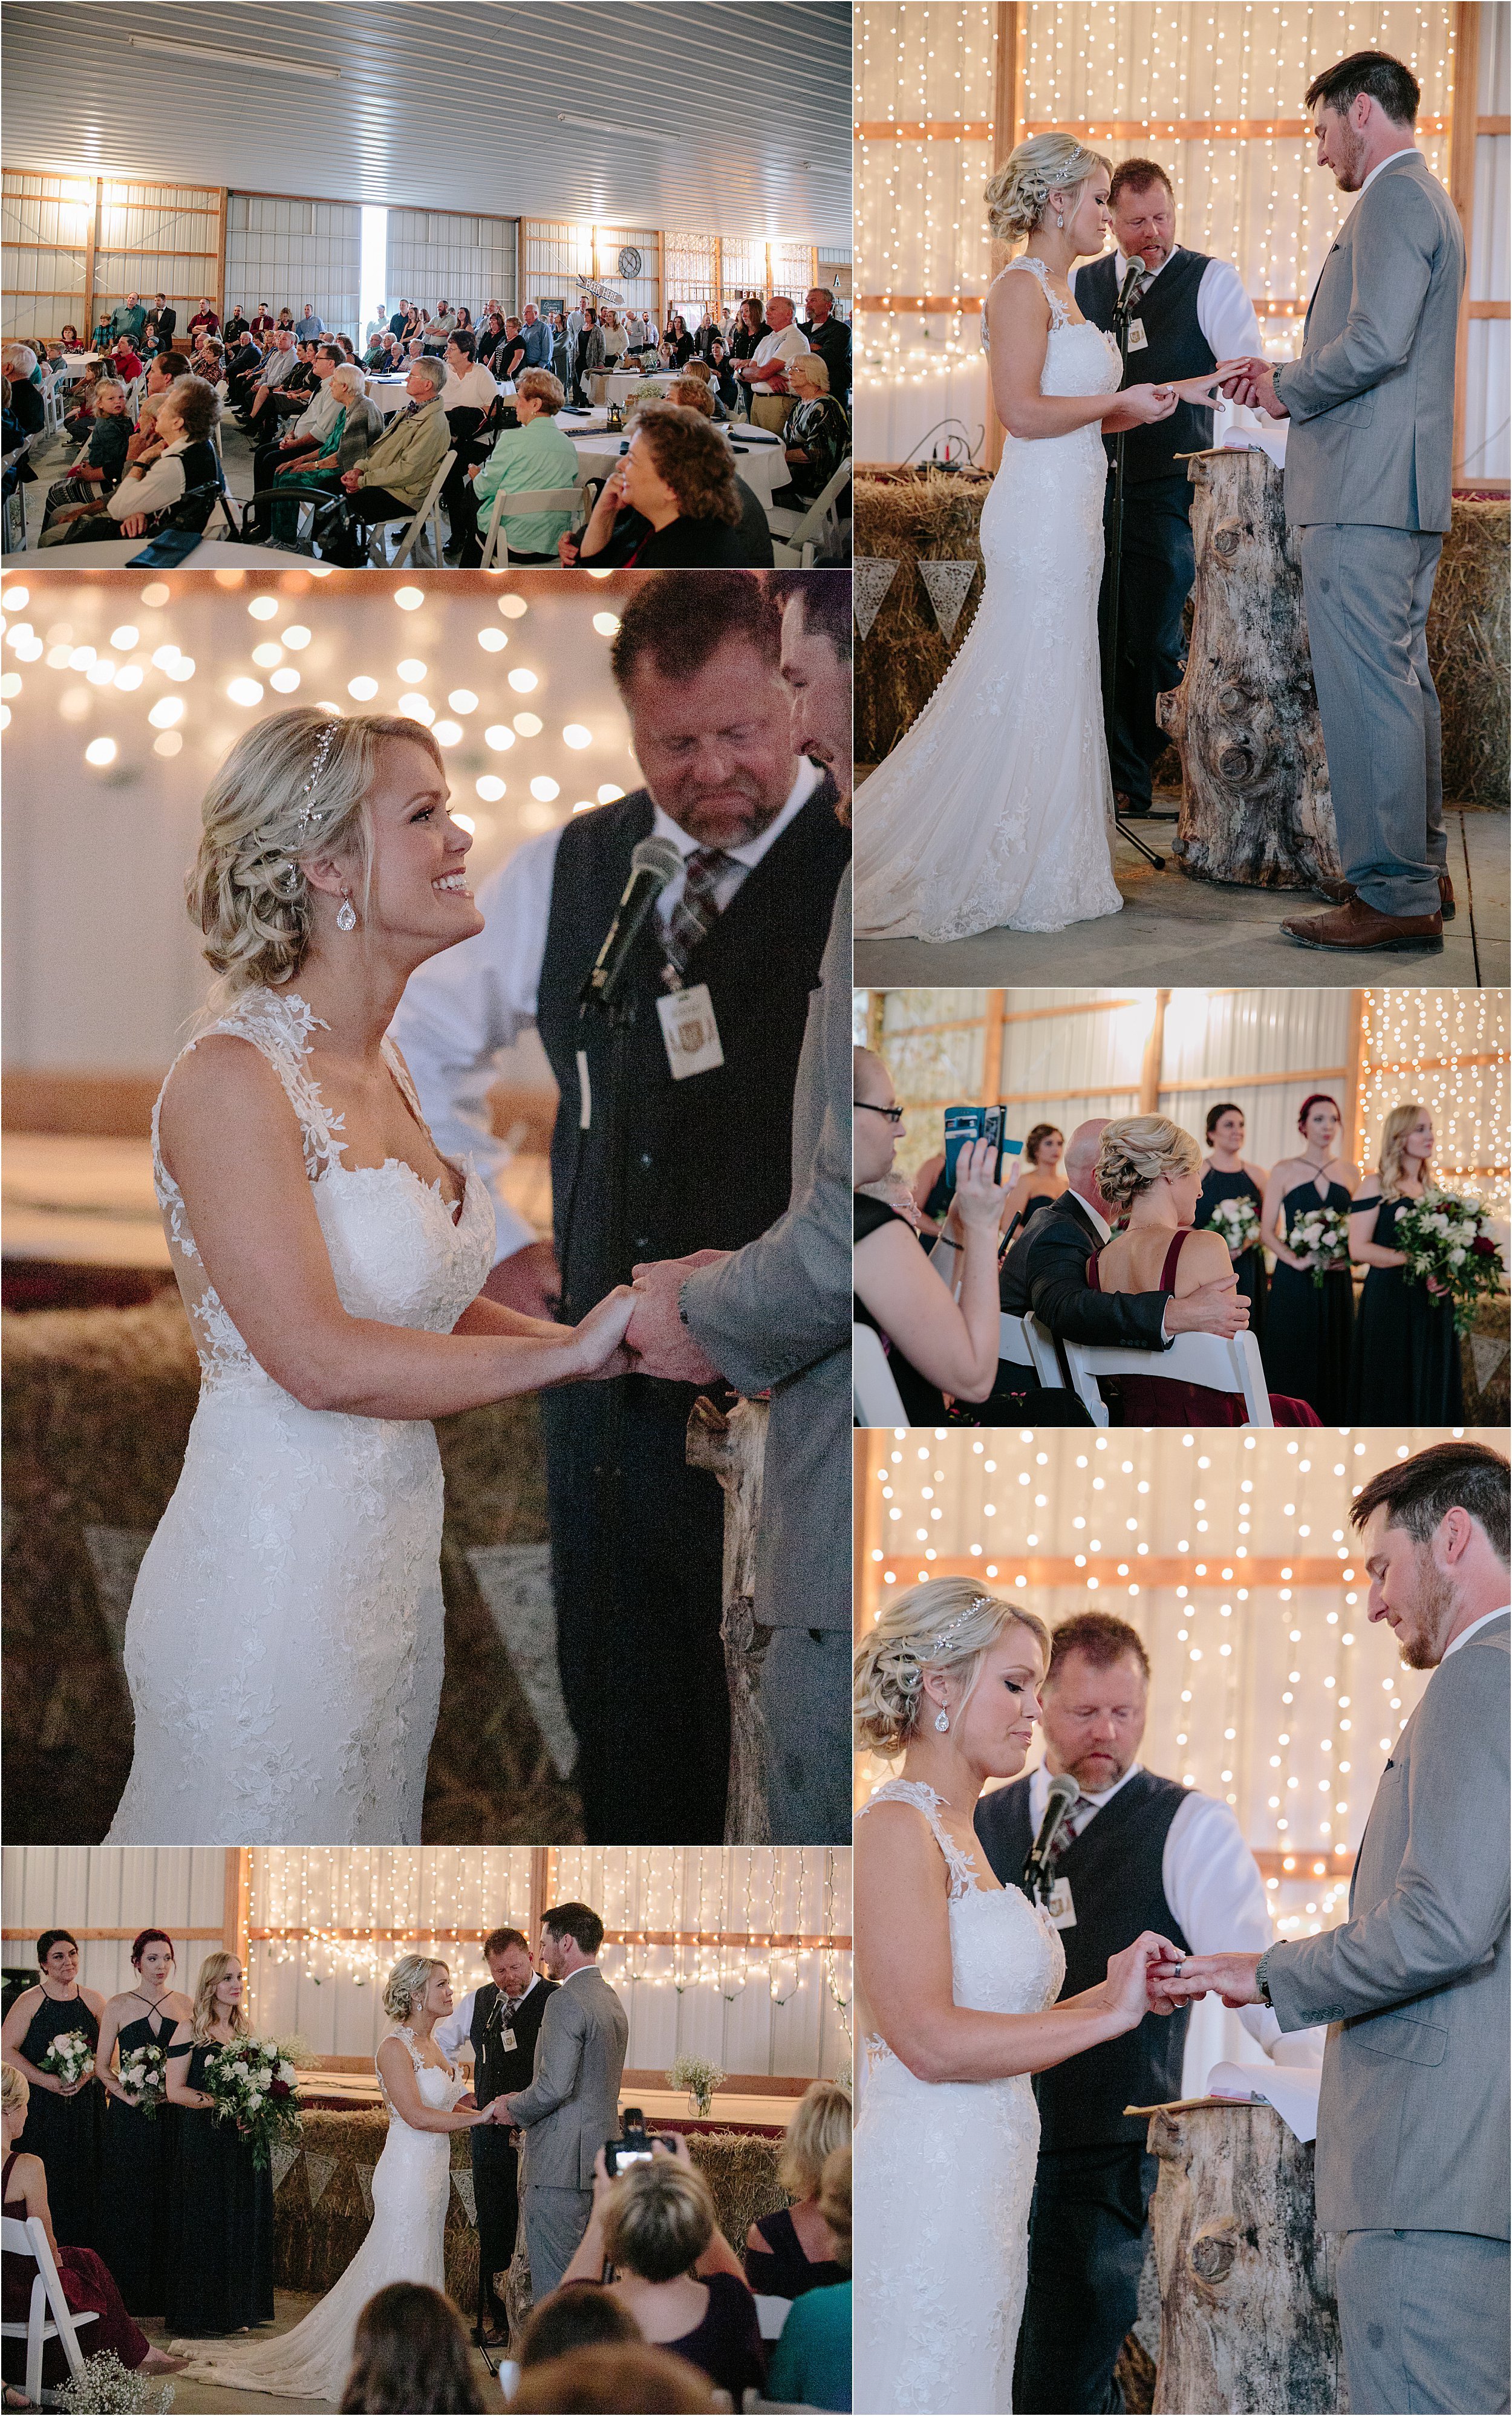 13-bride-groom-exchanging-vows-rings-string-lights.JPG